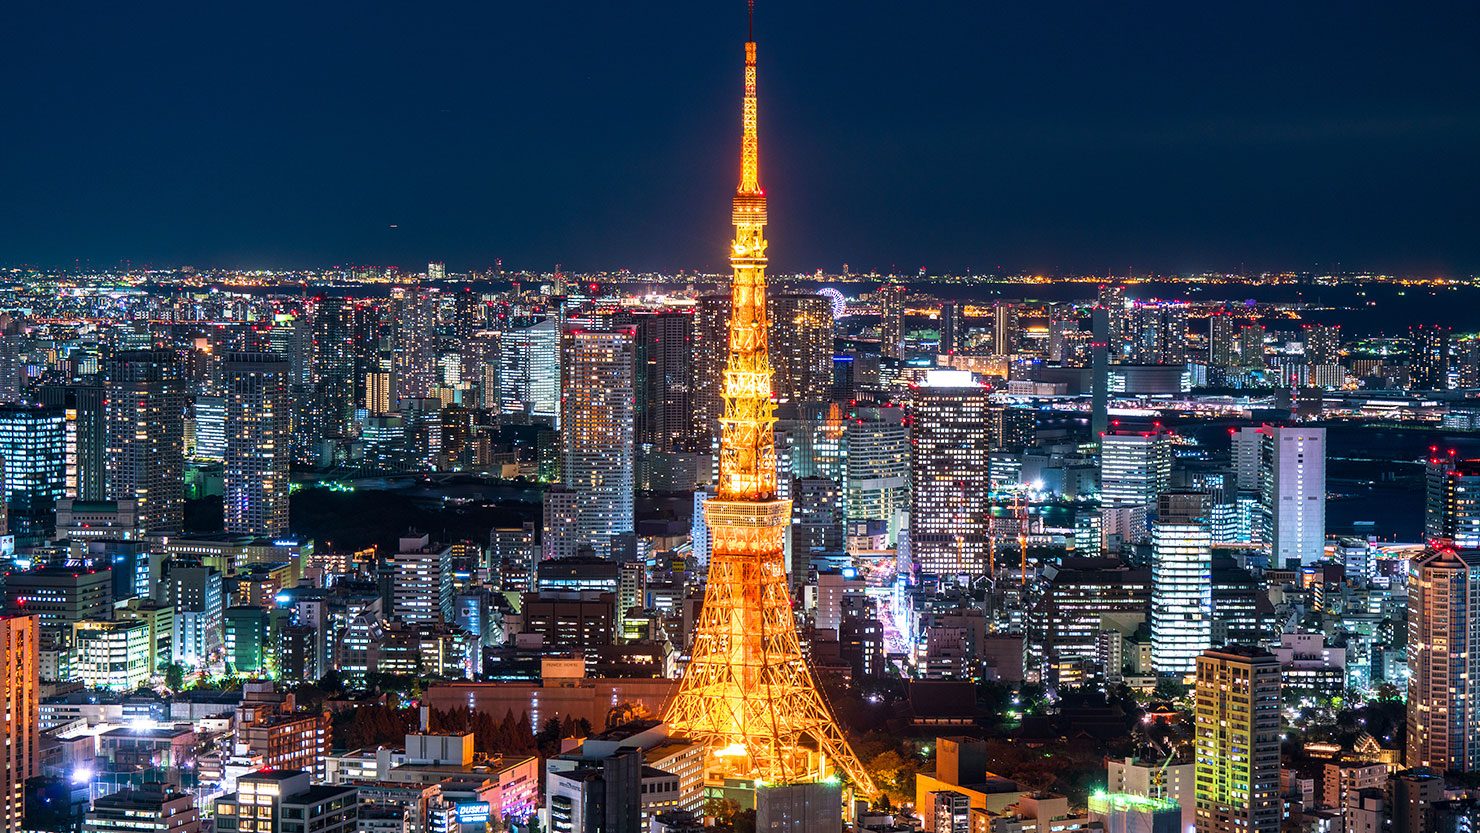 ホームズ 東京 大阪のベスト夜景10選を紹介 夜景が楽しめる優雅なライフスタイル 暮らし方から物件探し